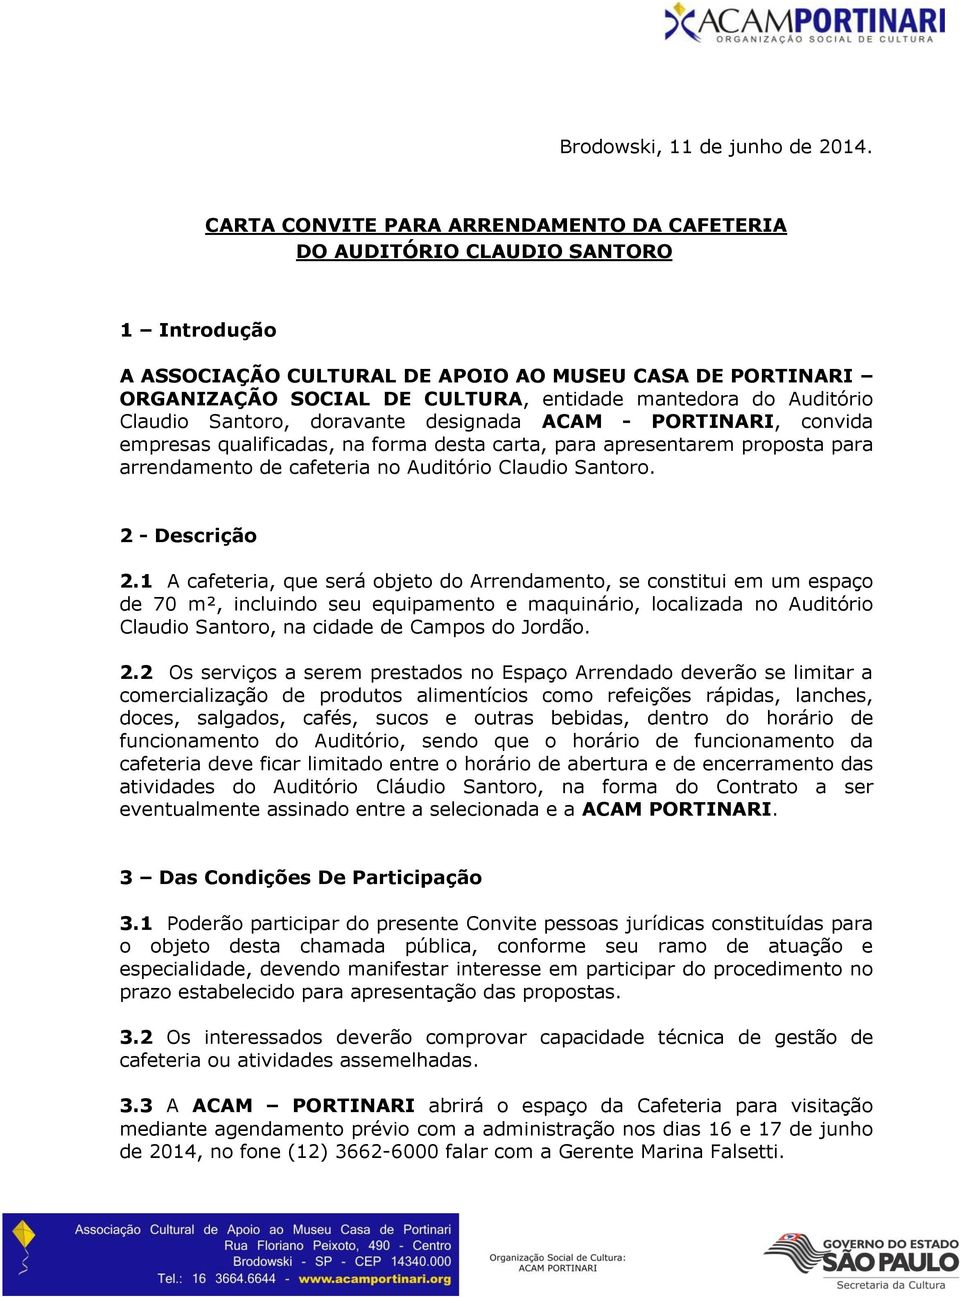 Auditório Claudio Santoro, doravante designada ACAM - PORTINARI, convida empresas qualificadas, na forma desta carta, para apresentarem proposta para arrendamento de cafeteria no Auditório Claudio